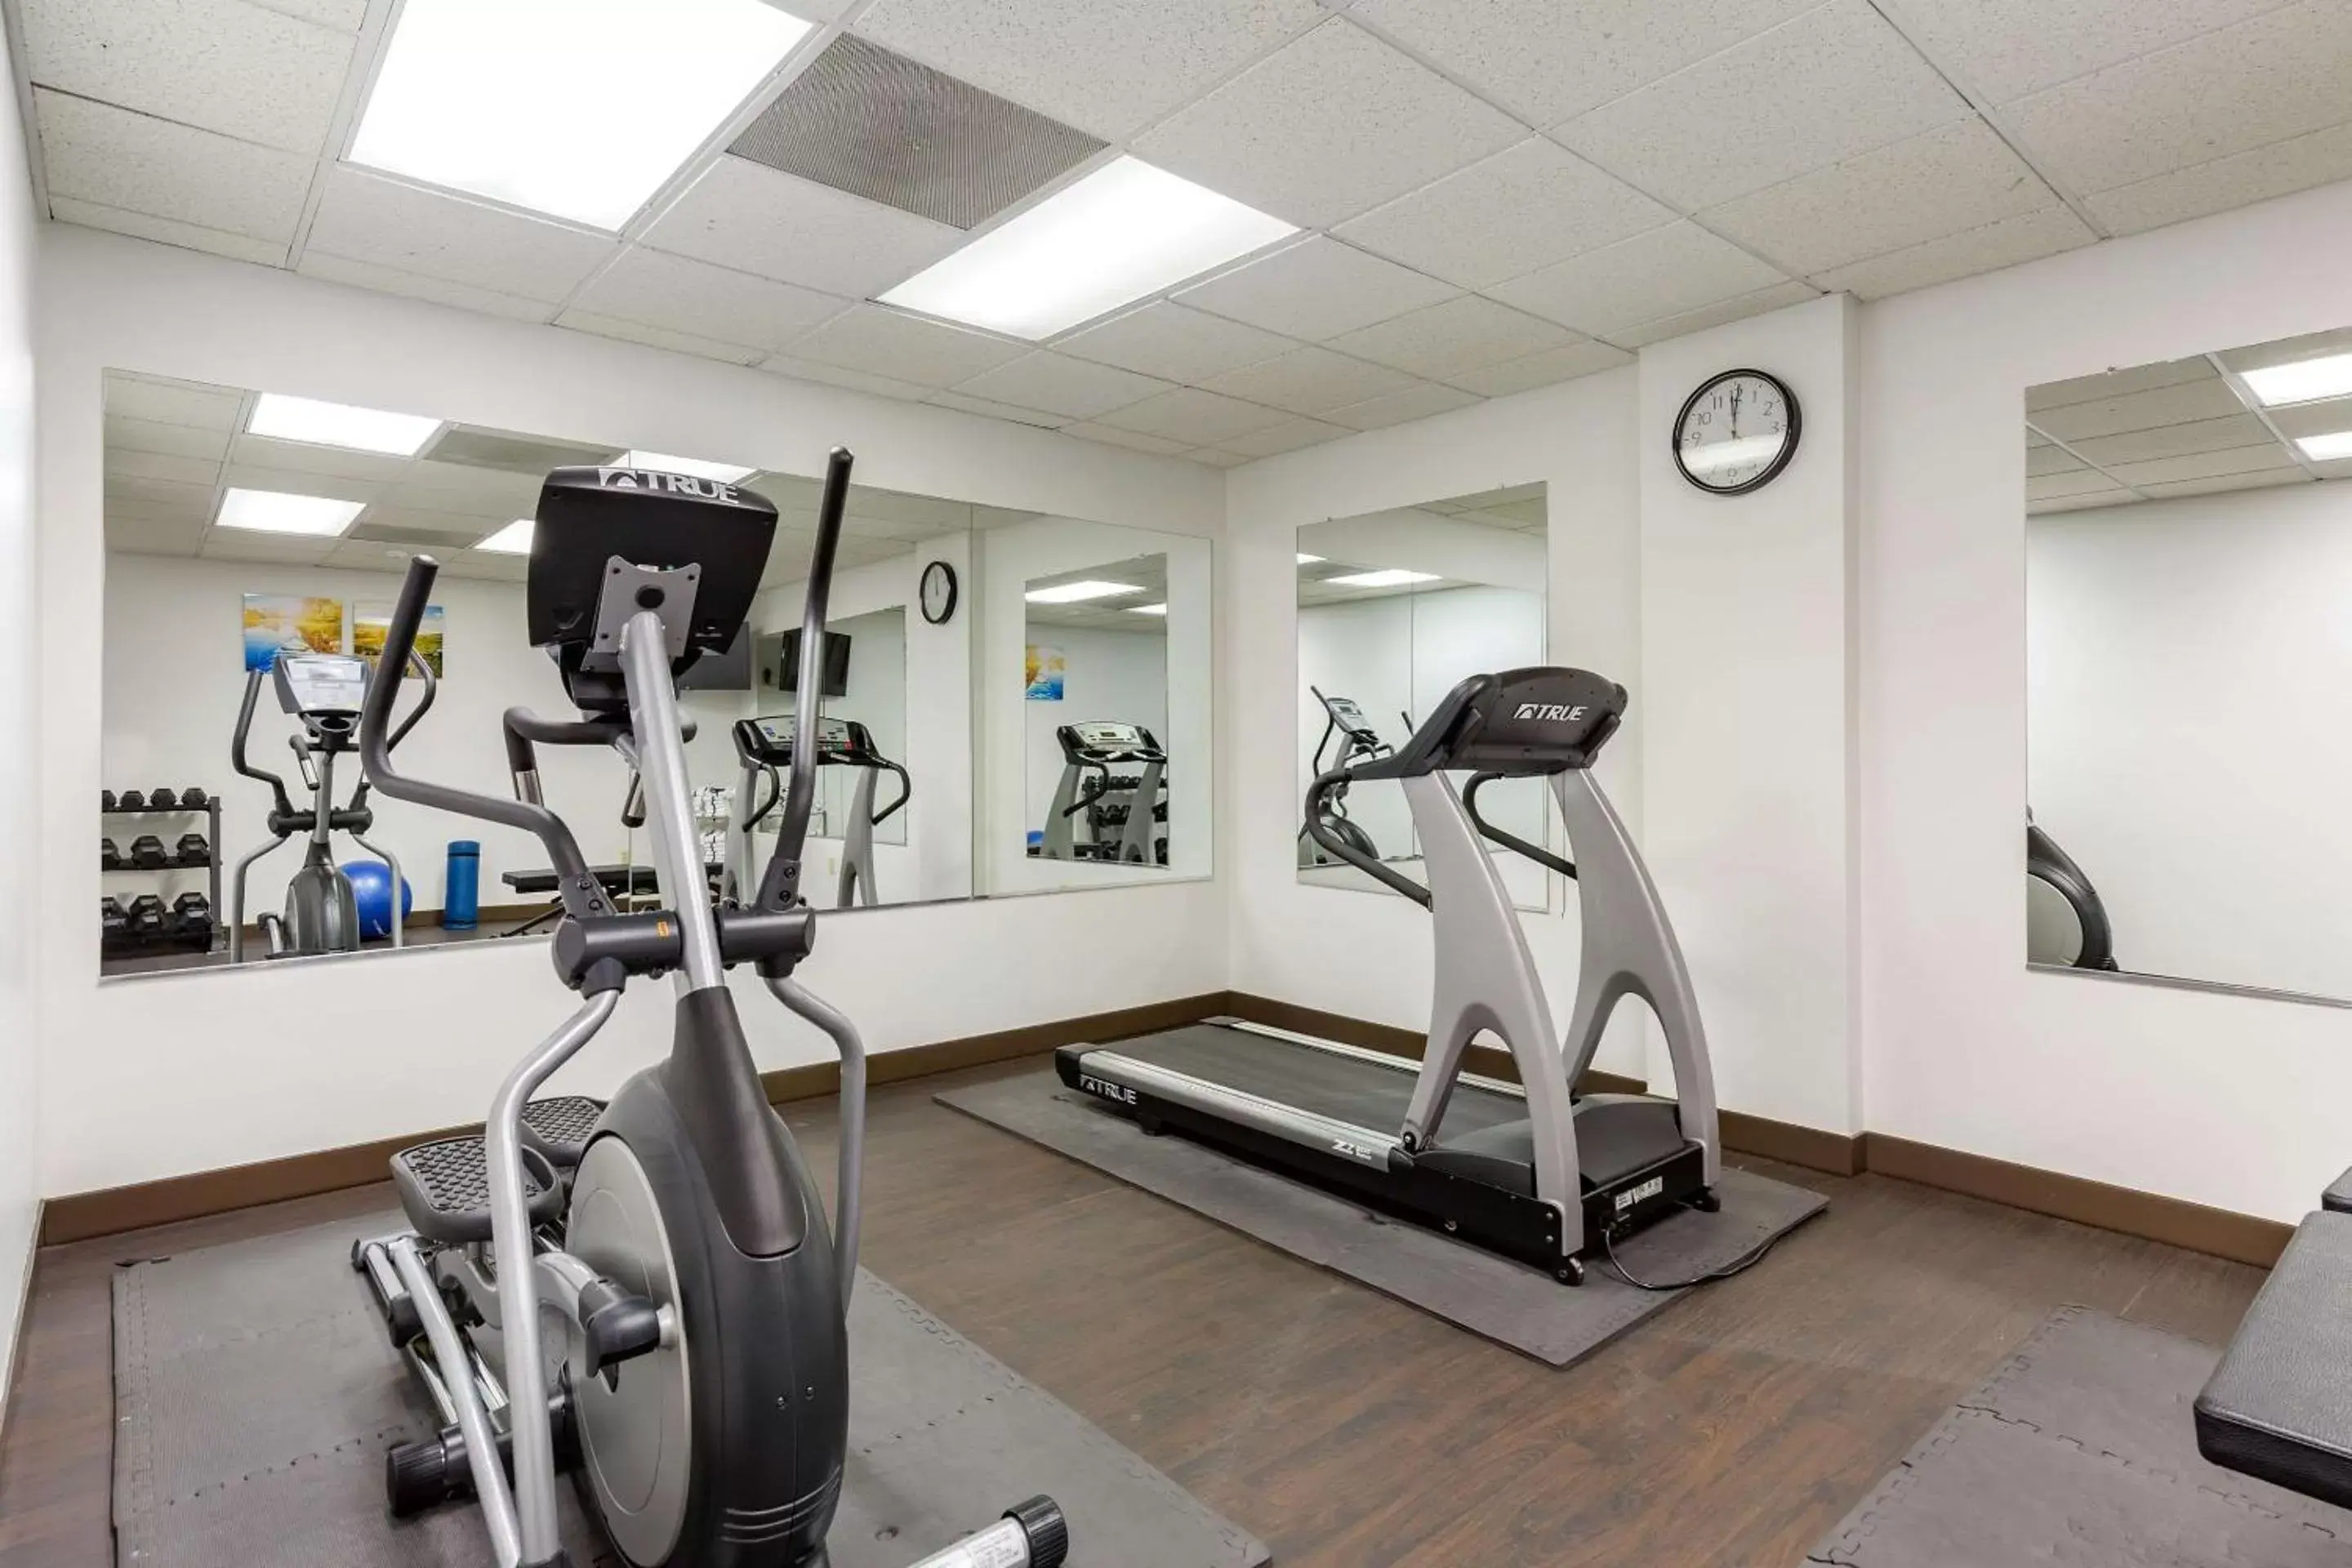 Fitness centre/facilities, Fitness Center/Facilities in Comfort Inn Martinsburg